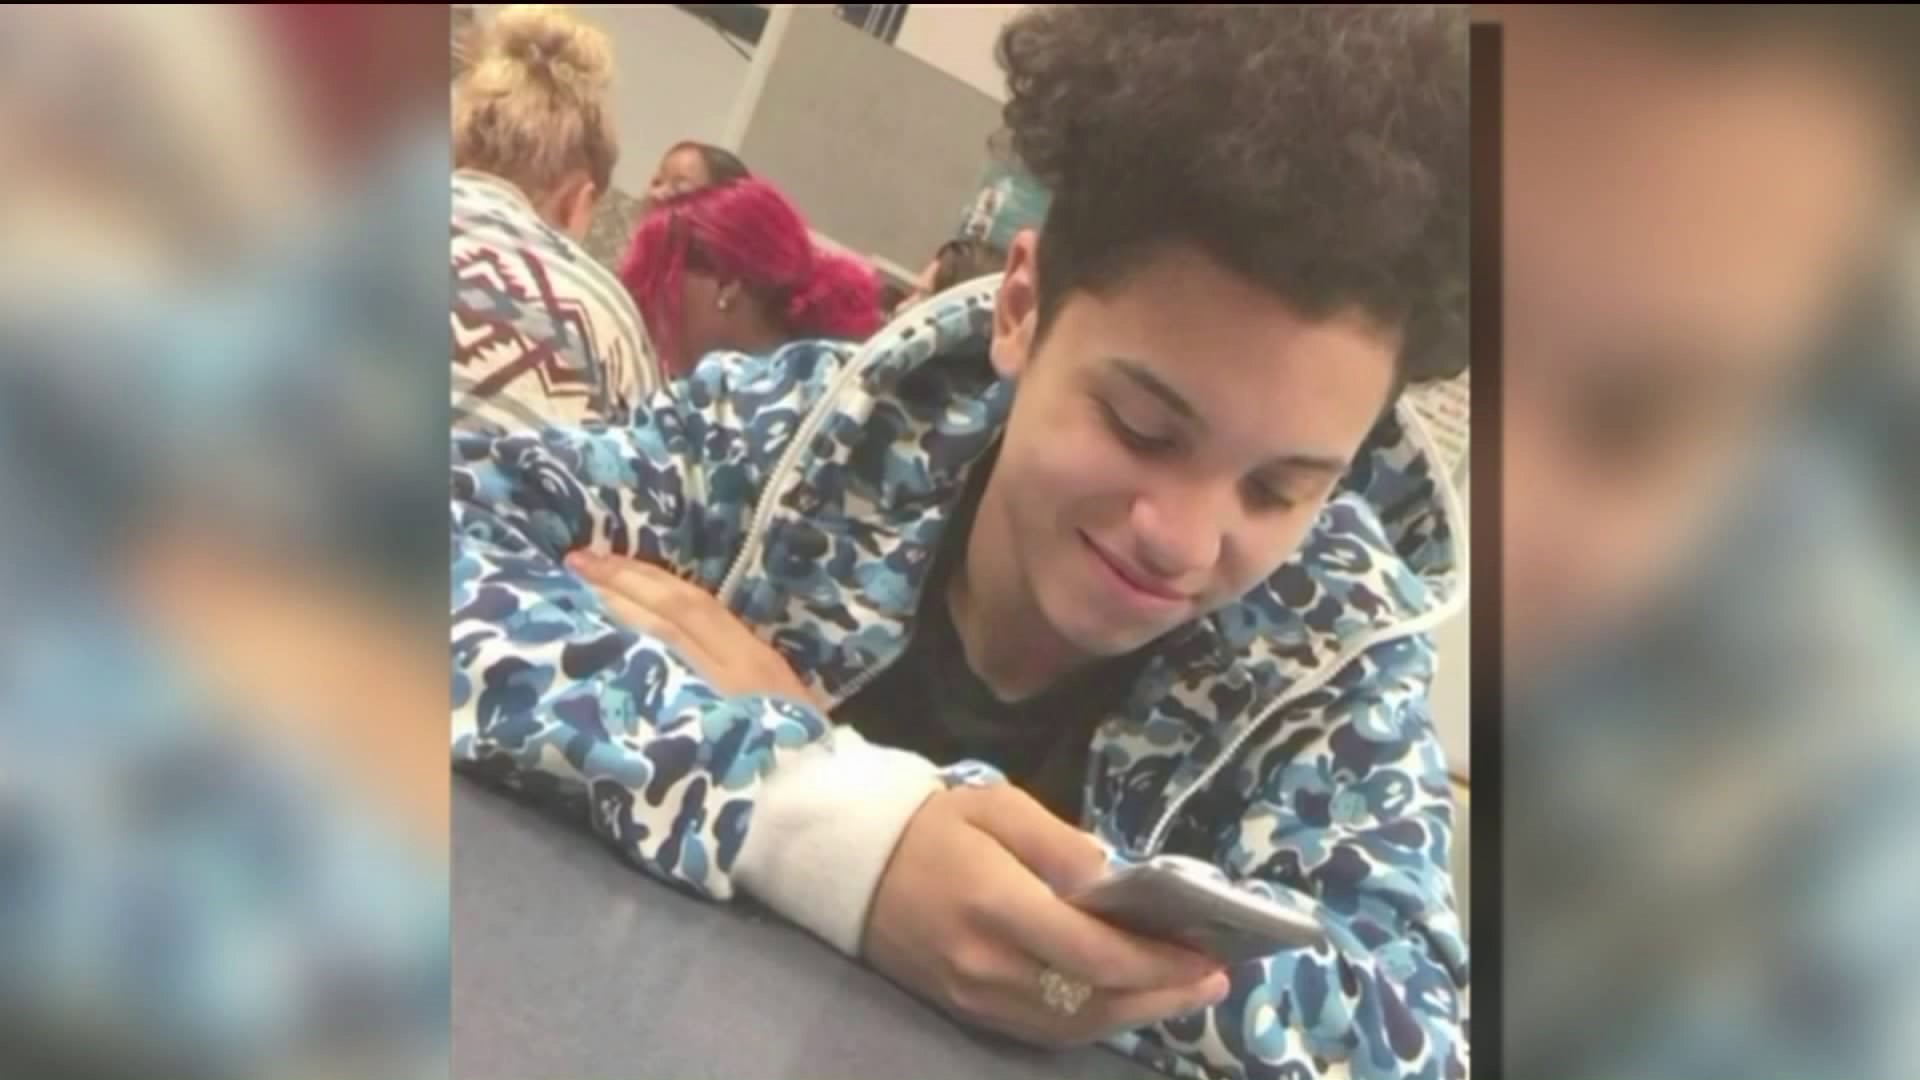 Cousin of teen shot in Bridgeport speaks out